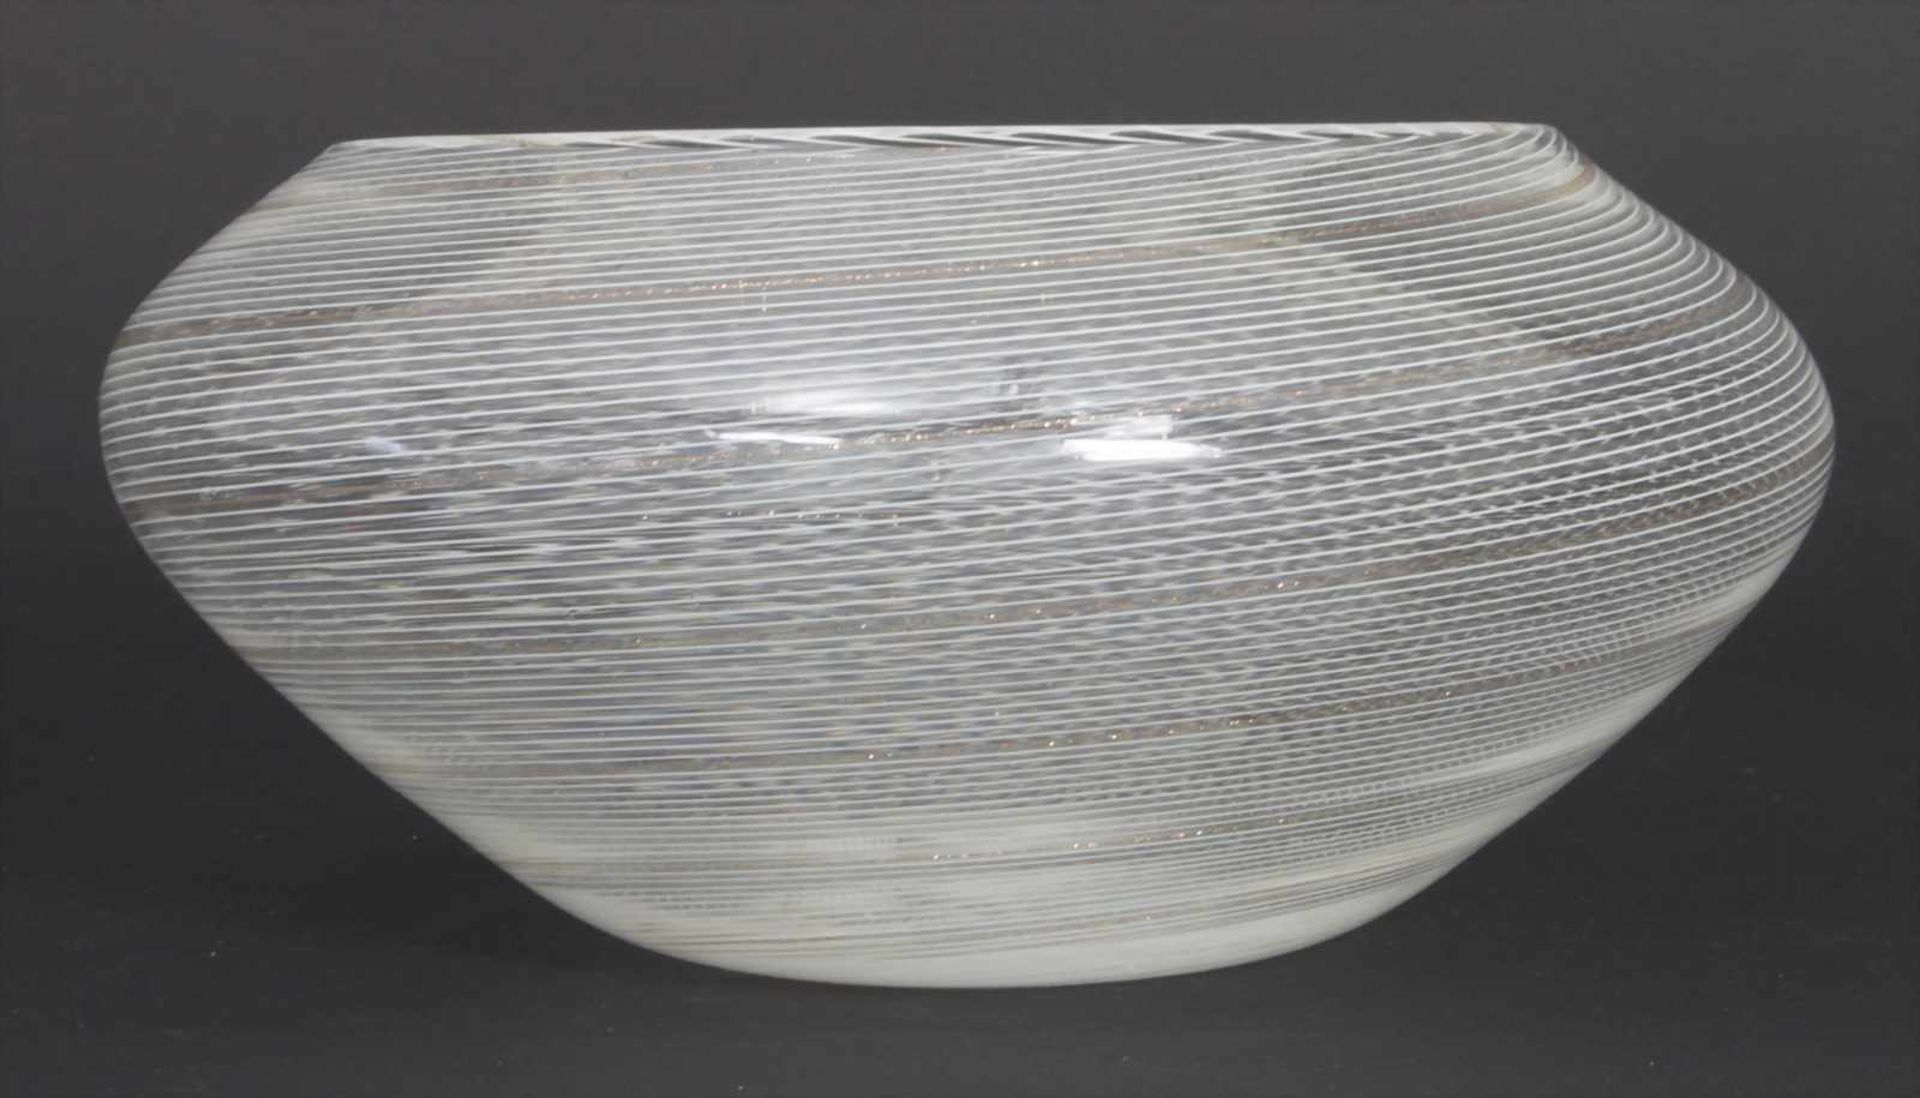 Ziervase / A decorative vase, Murano, Cenedese, um 1955Material/Technik: farbloses Glas, - Image 2 of 4